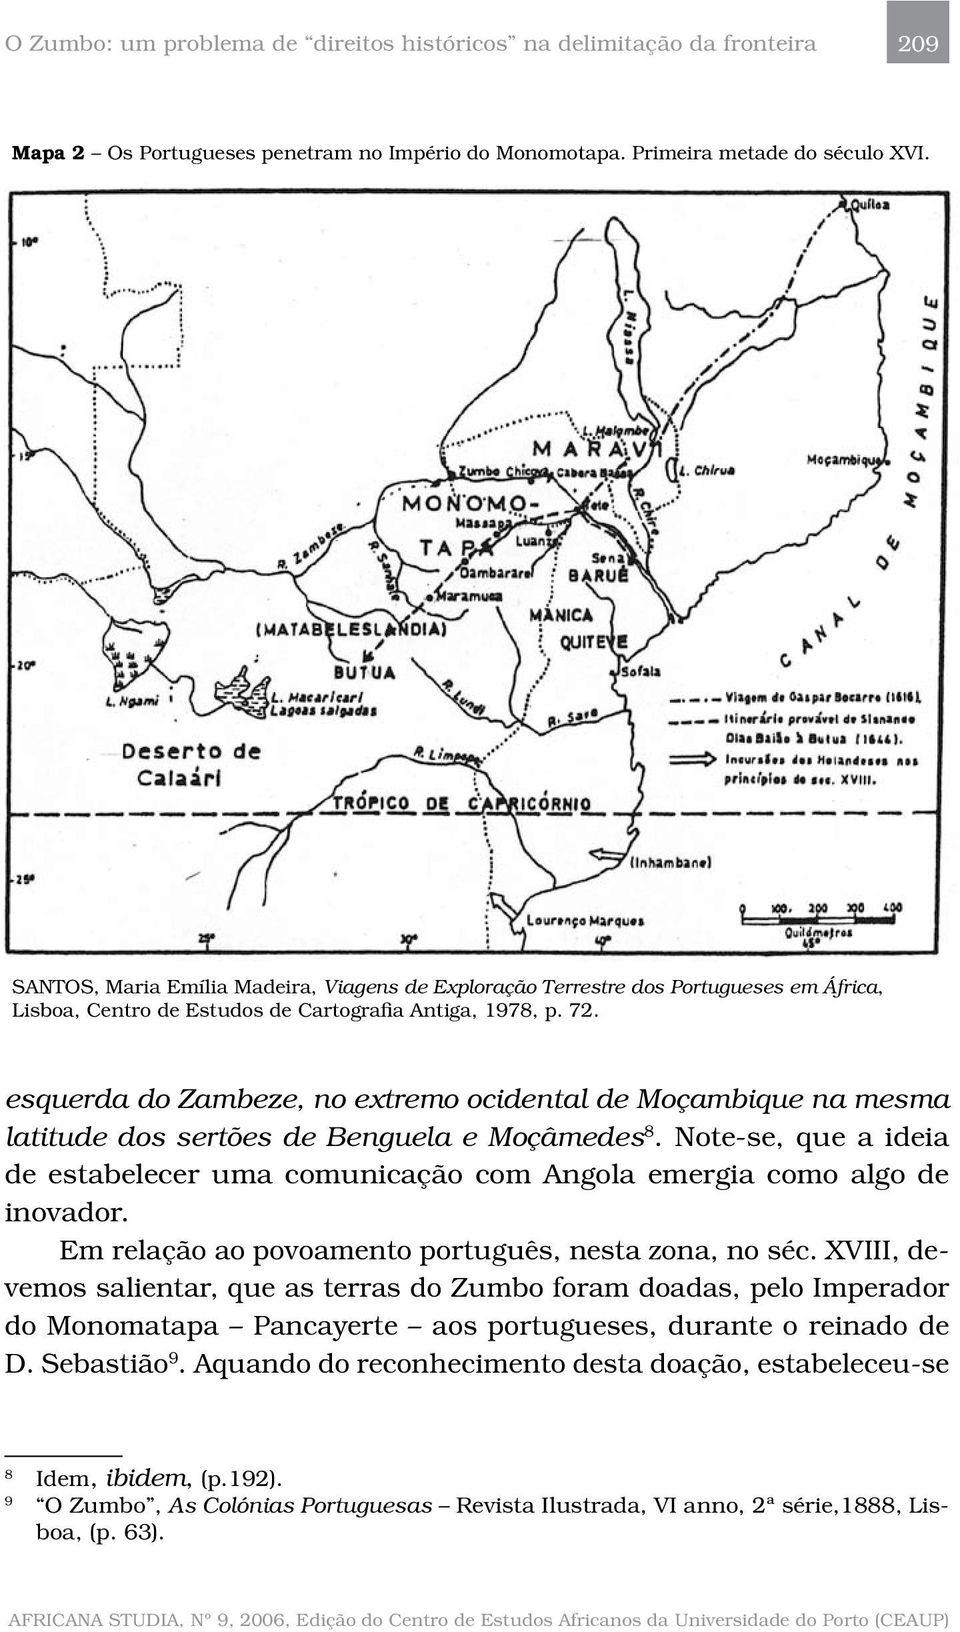 esquerda do Zambeze, no extremo ocidental de Moçambique na mesma latitude dos sertões de Benguela e Moçâmedes 8.